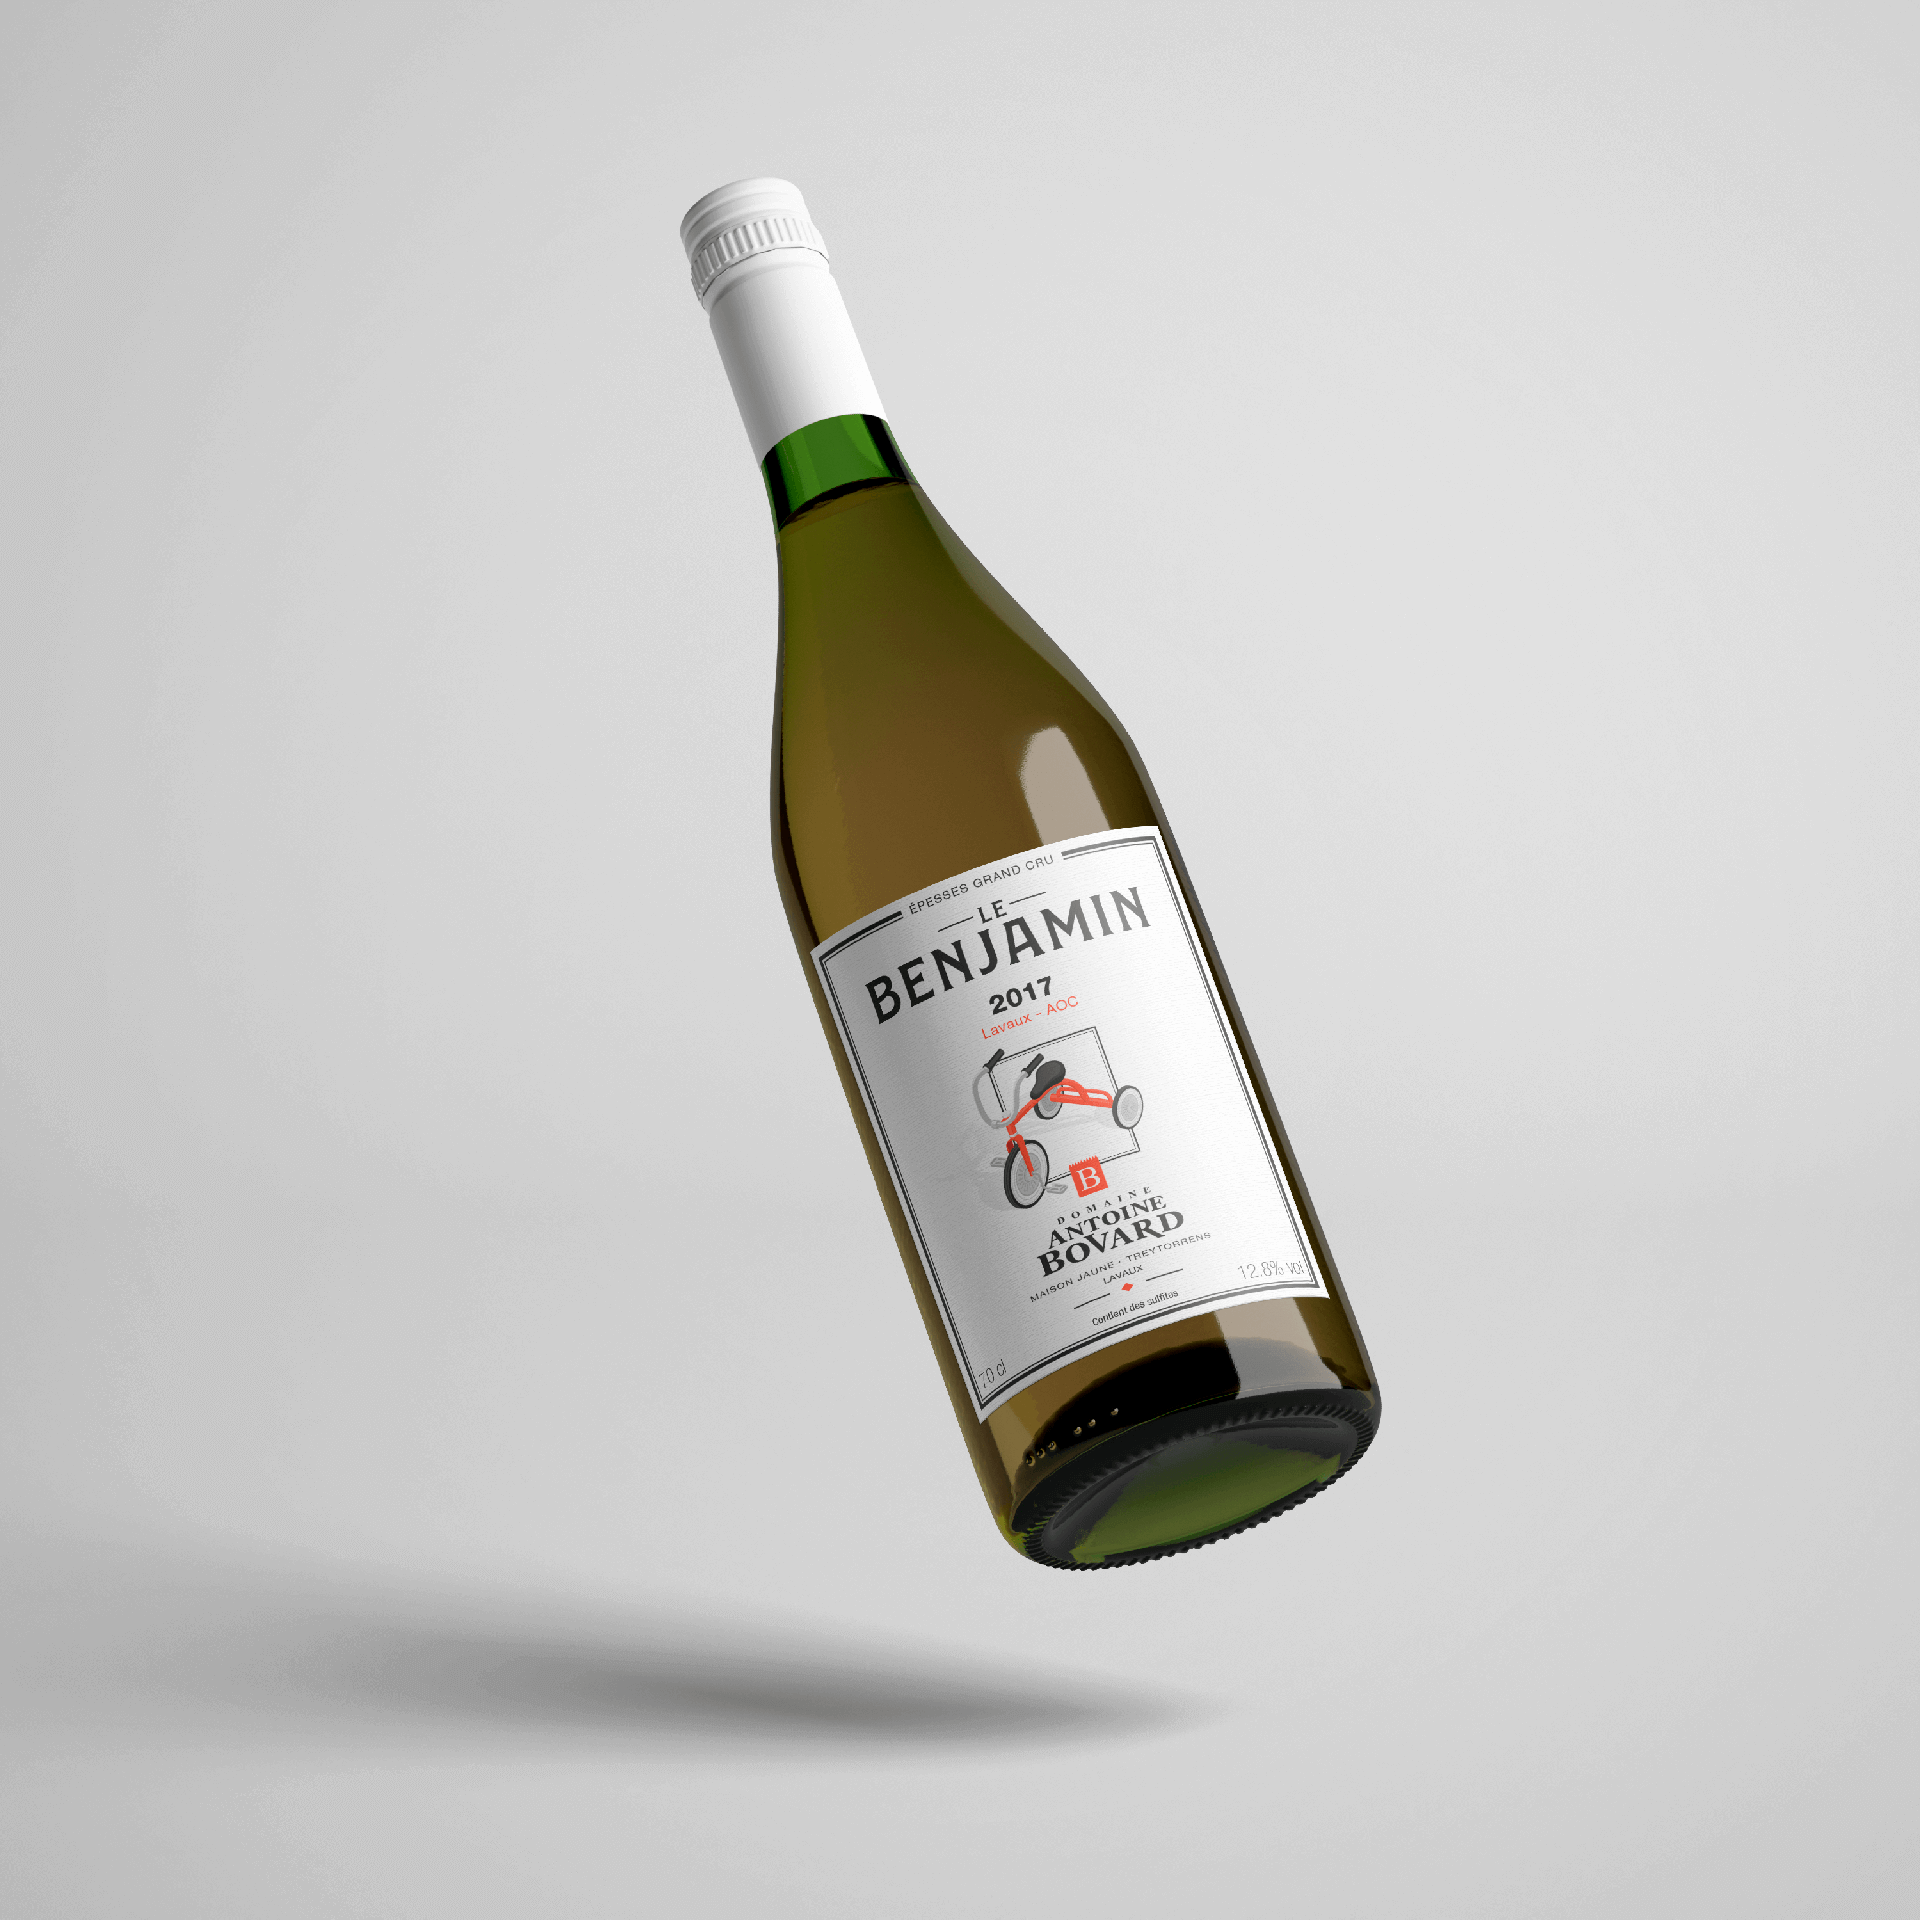 Wine Labels - Ricardo Moreira - Graphic Designer